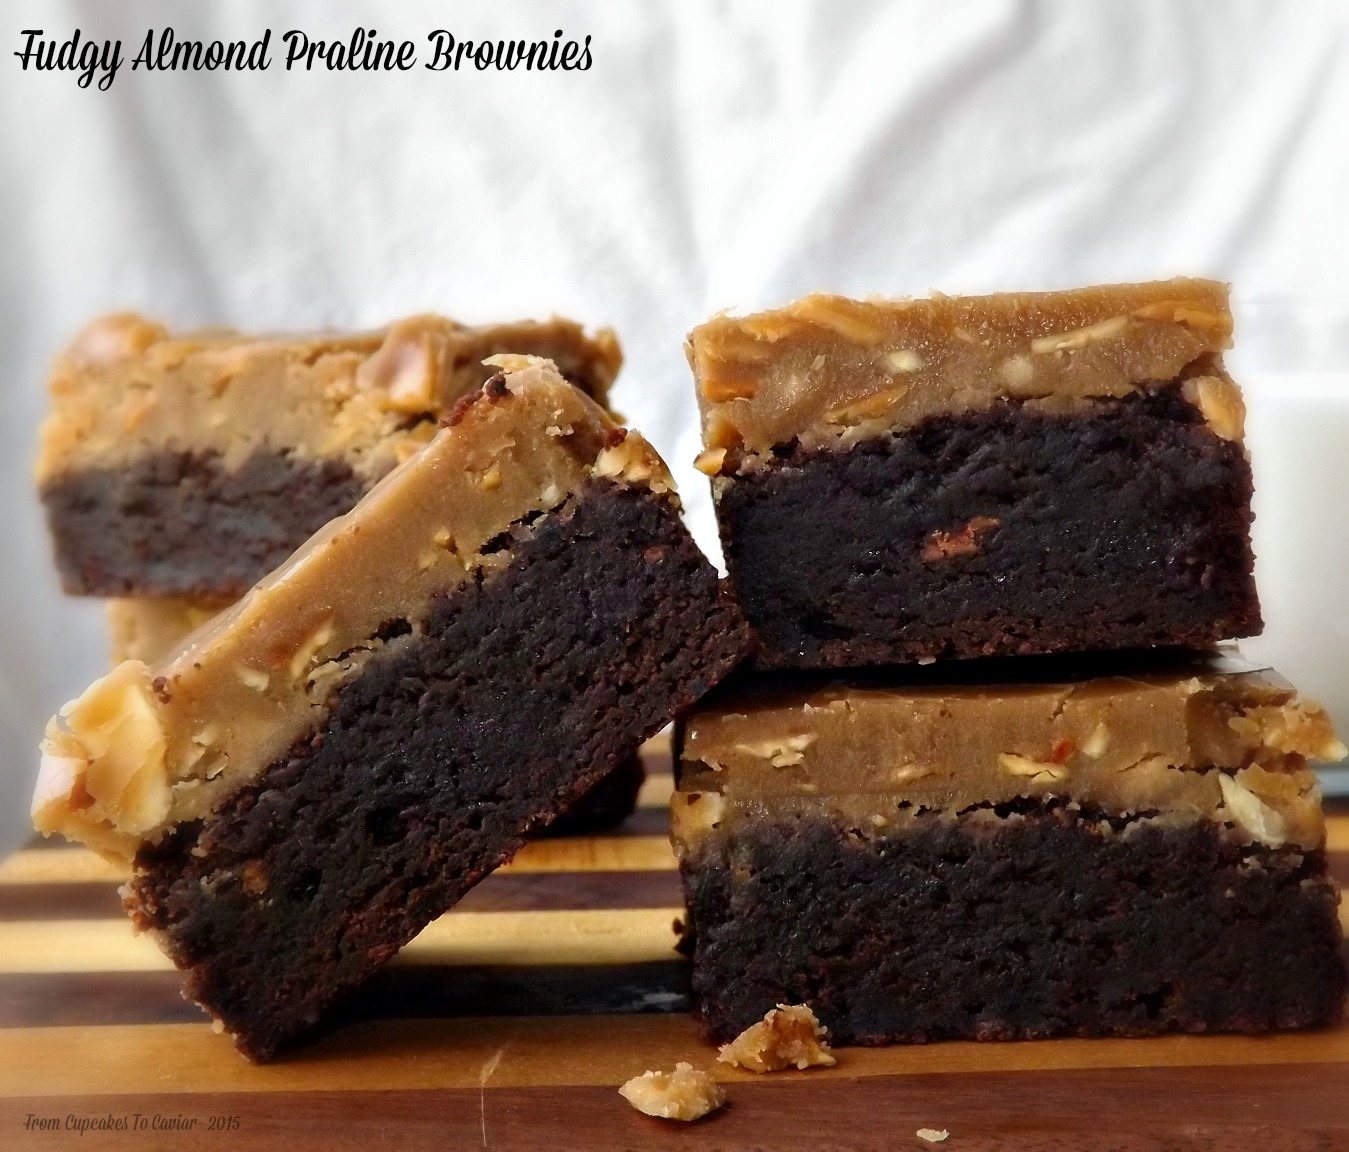 Fudgy Almond Praline Brownies